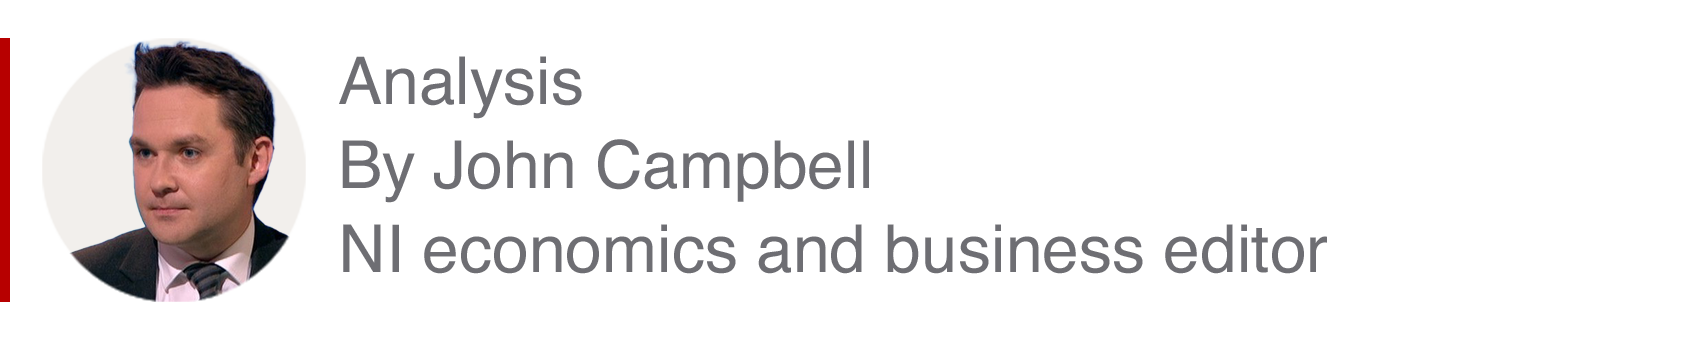 Аналитическая вставка Джона Кэмпбелла, редактора по экономике и бизнесу NI